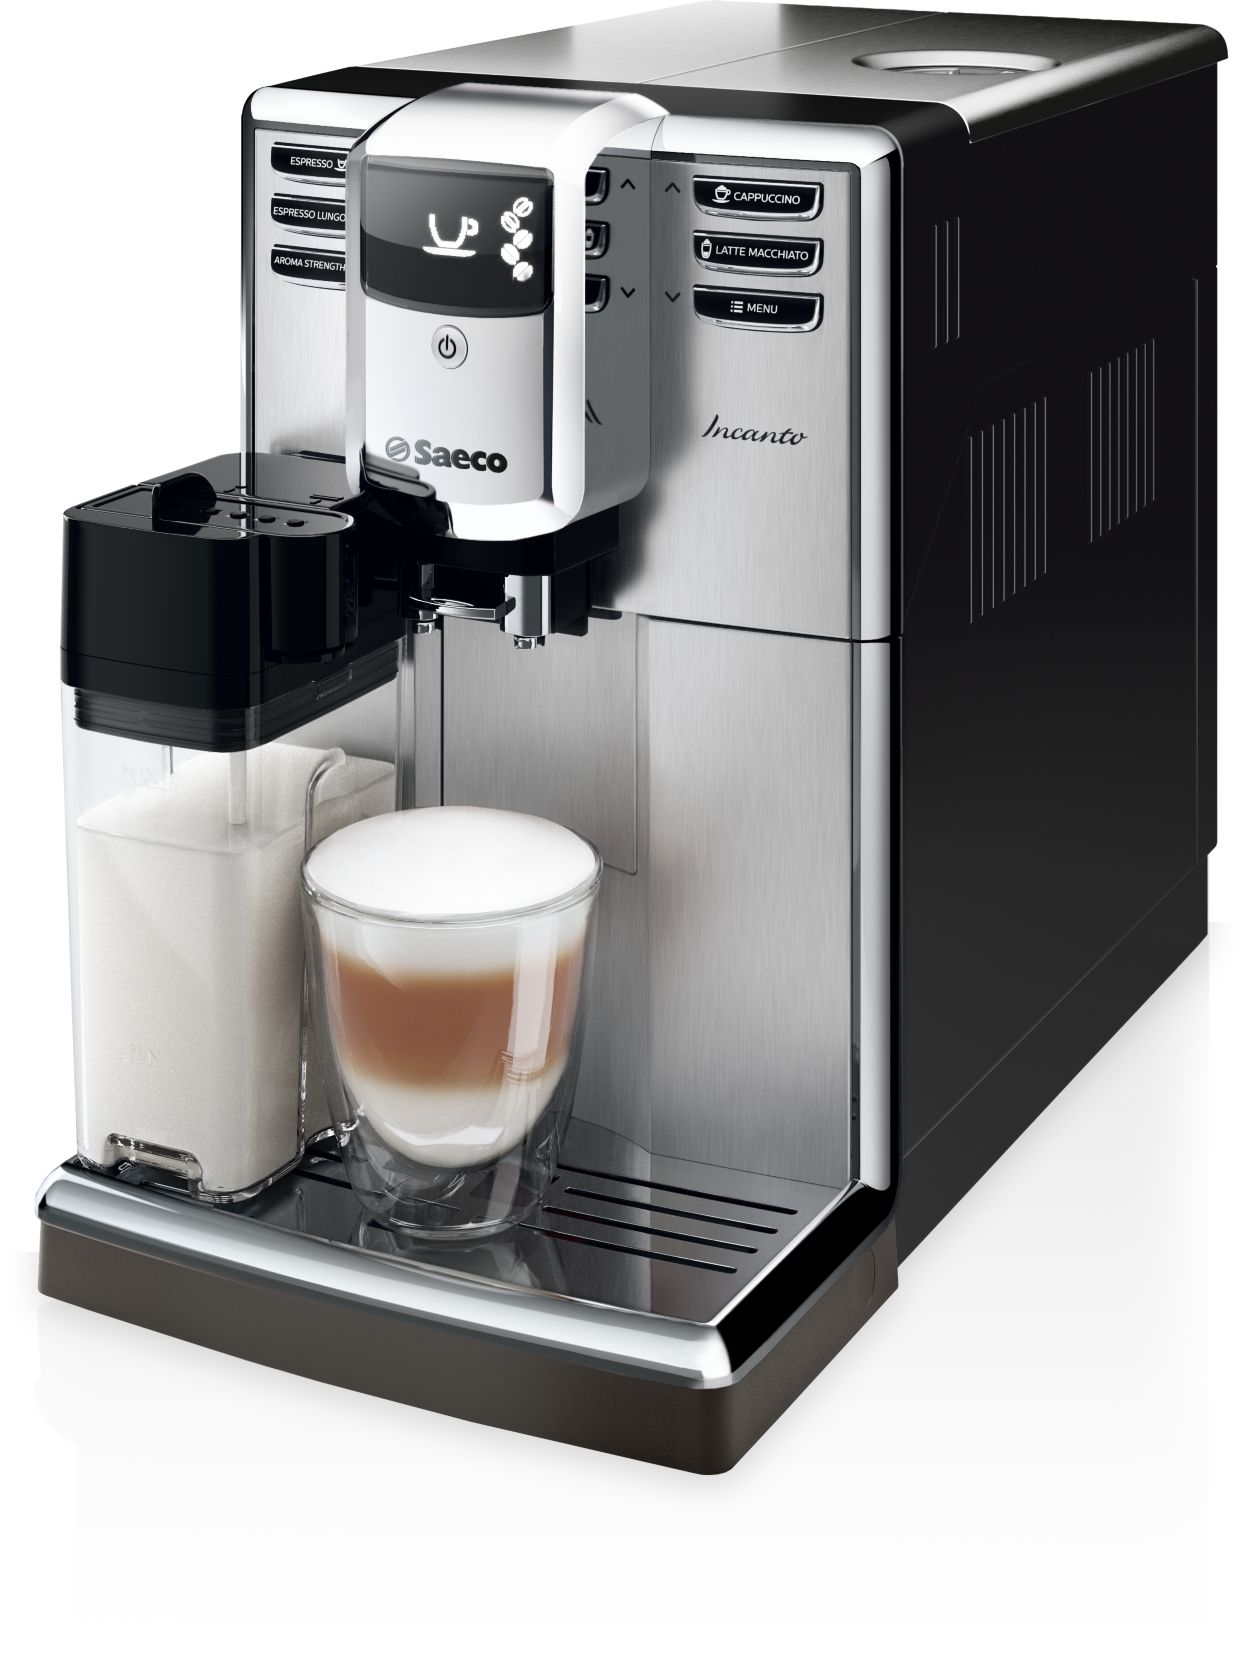 Belen Instalaciones - La #cafetera espresso manual Saeco es ideal para los  papás que disfrutan de saborear un café perfecto. Su exclusivo filtro de  crema a presión asegura una cream exquisita y